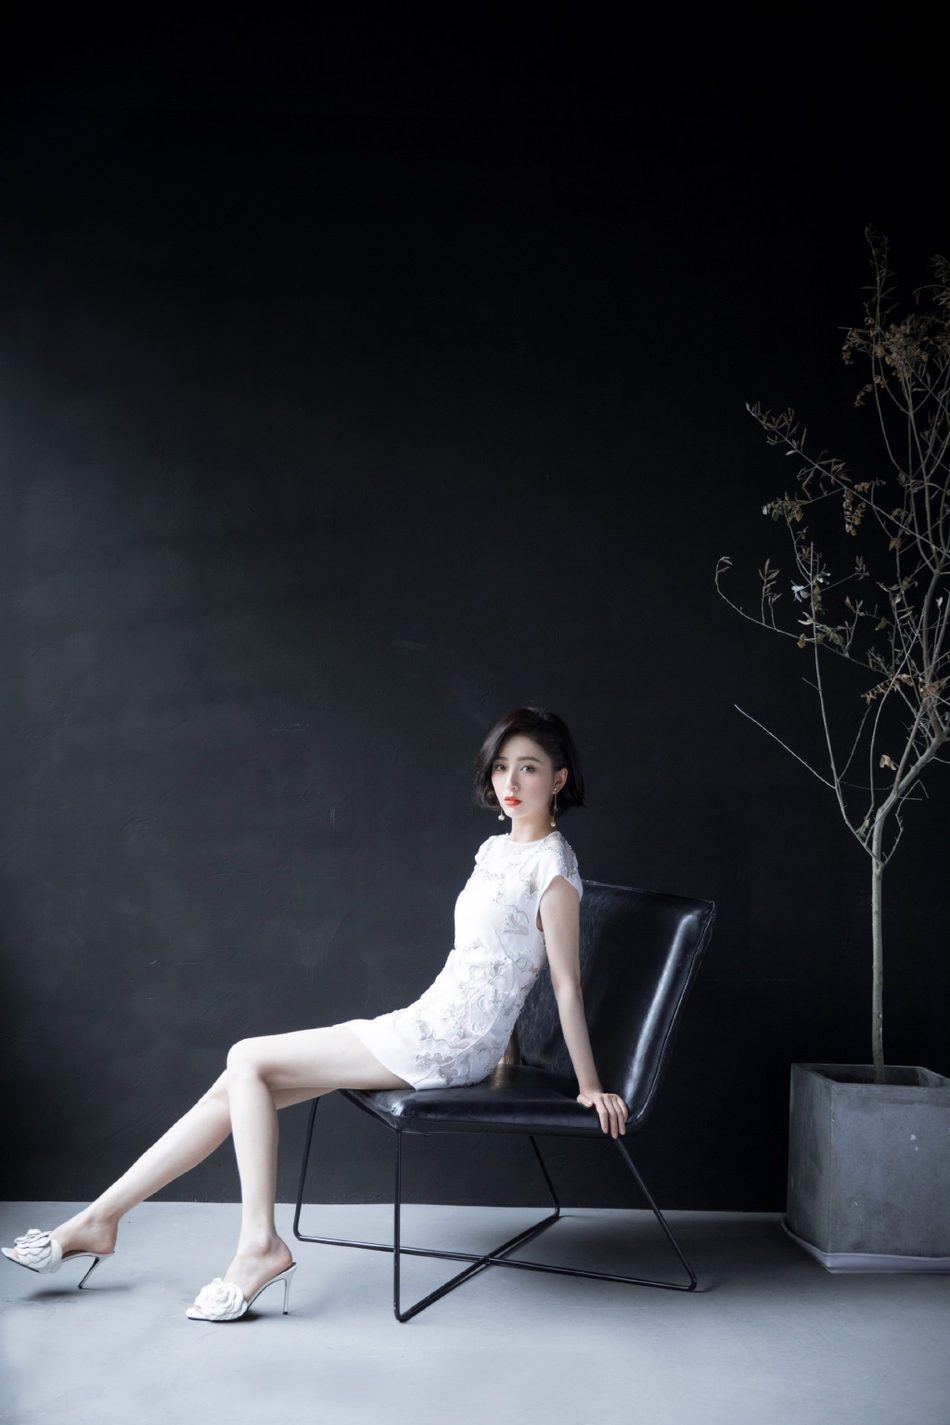 佟丽娅刺绣白裙气质清雅写真美照  第2张